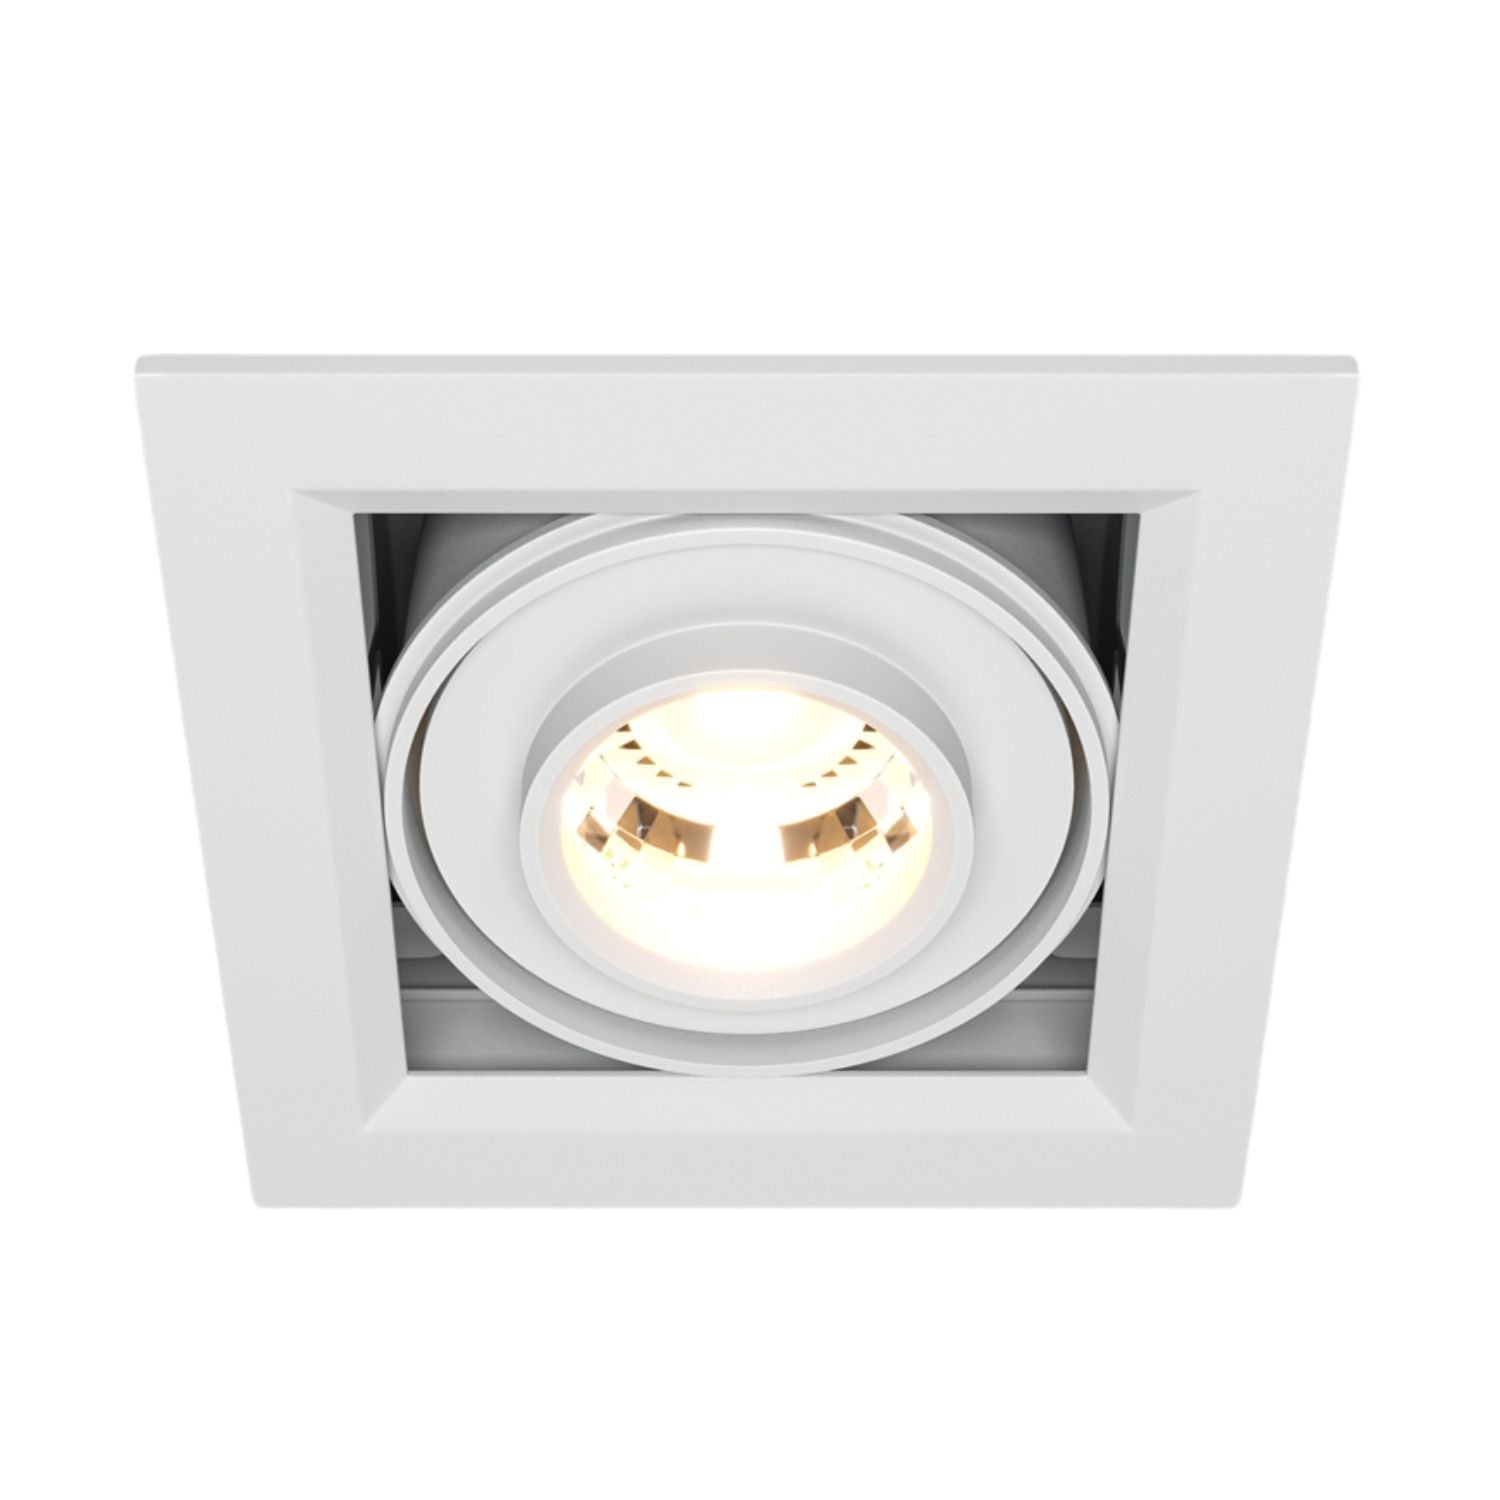 METALL MODERN – Integrierter LED-Einbaustrahler in weißem oder schwarzem Aluminium